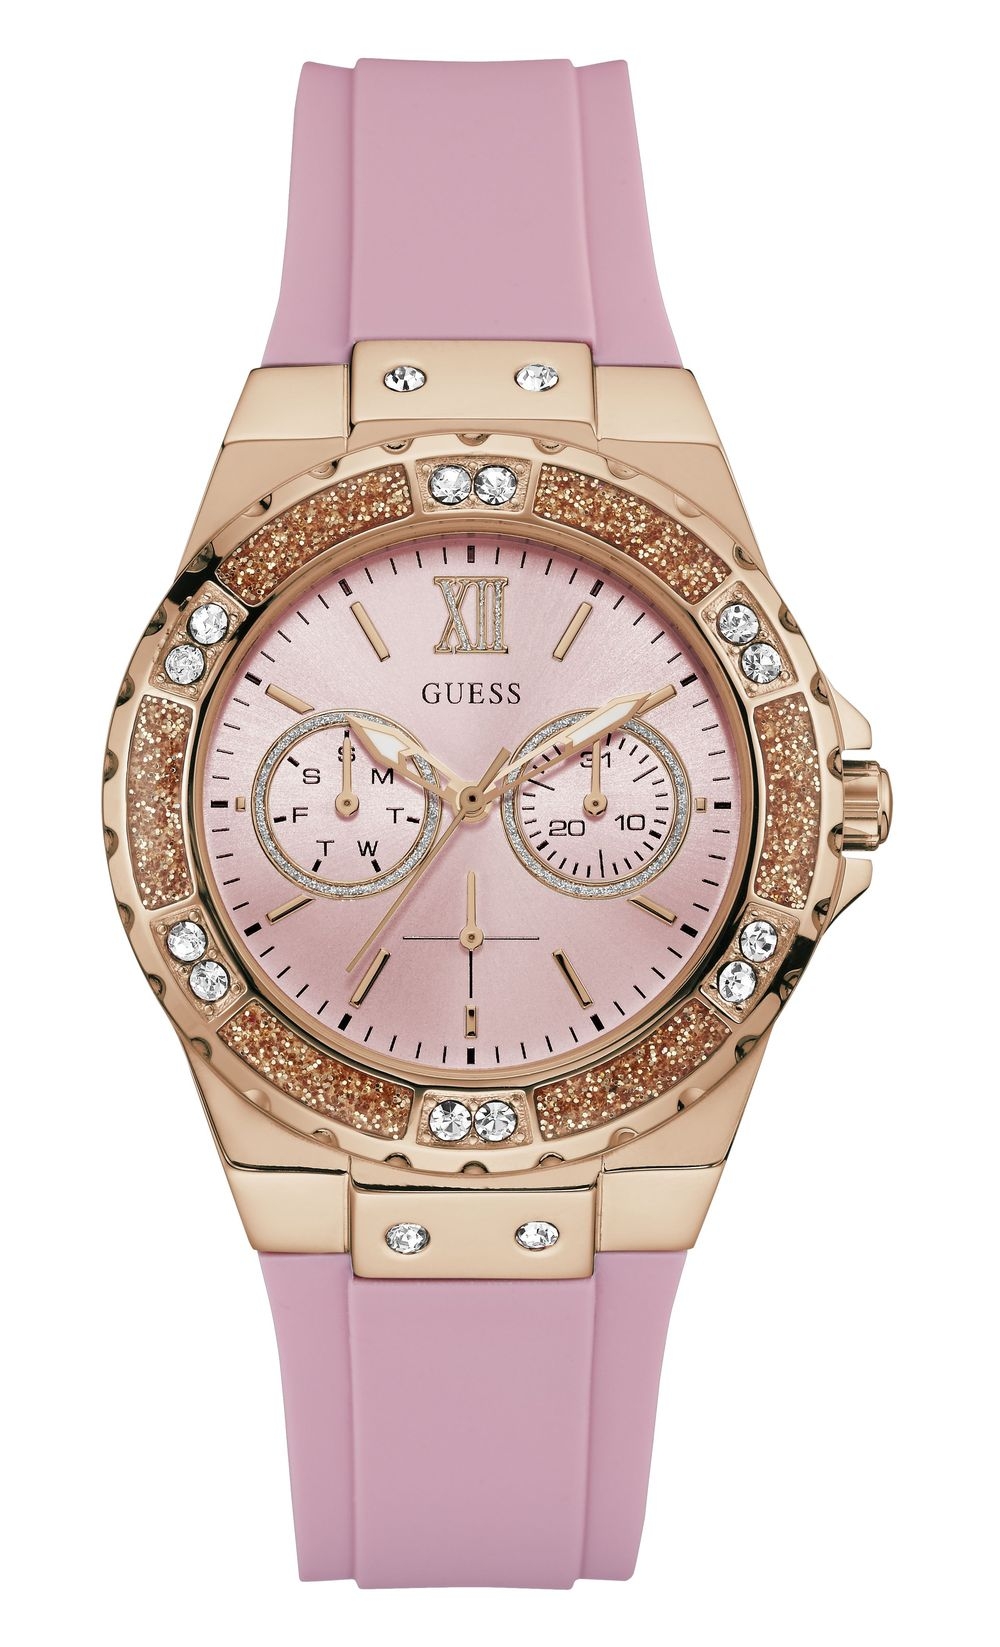 Дамски часовник от Guess в розова гама с кристали | Secretzone.bg